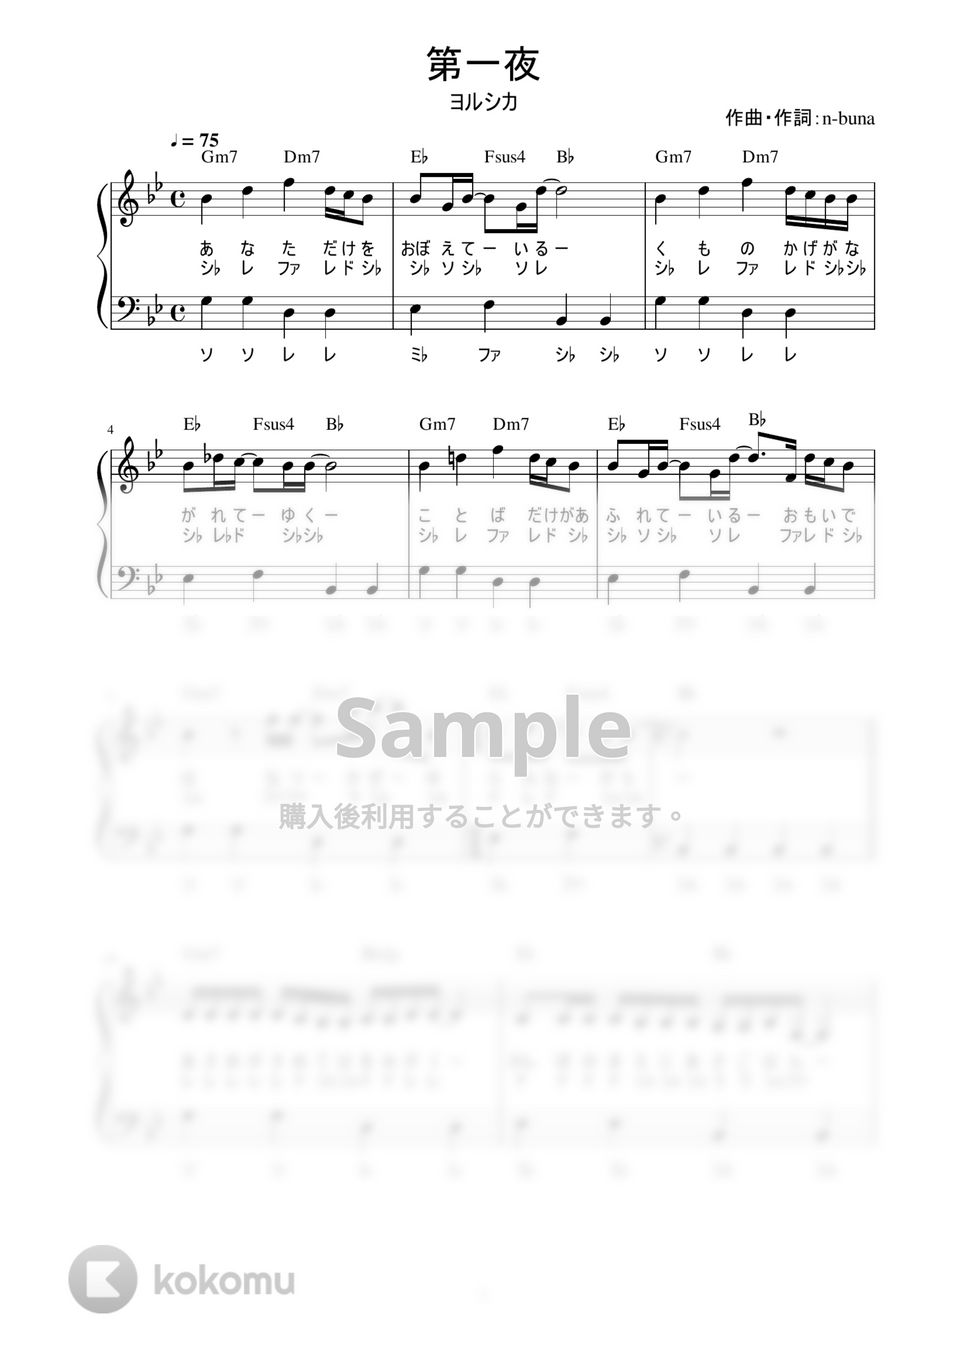 ヨルシカ - 第一夜 (かんたん / 歌詞付き / ドレミ付き / 初心者) by piano.tokyo